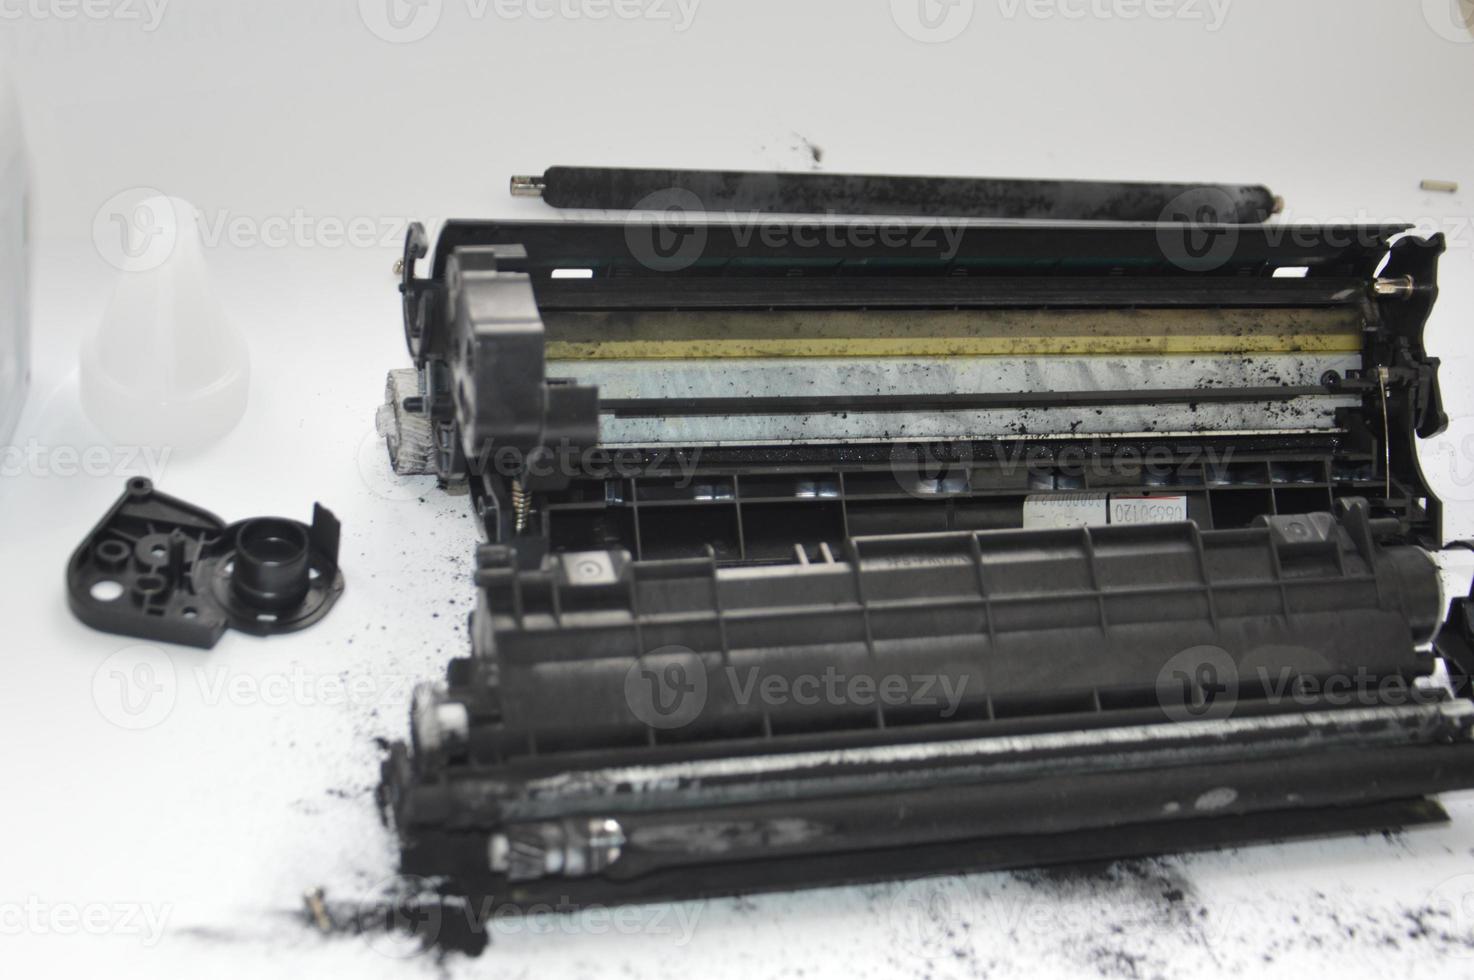 chargement de la cartouche d'imprimante laser avec de la poudre de toner photo